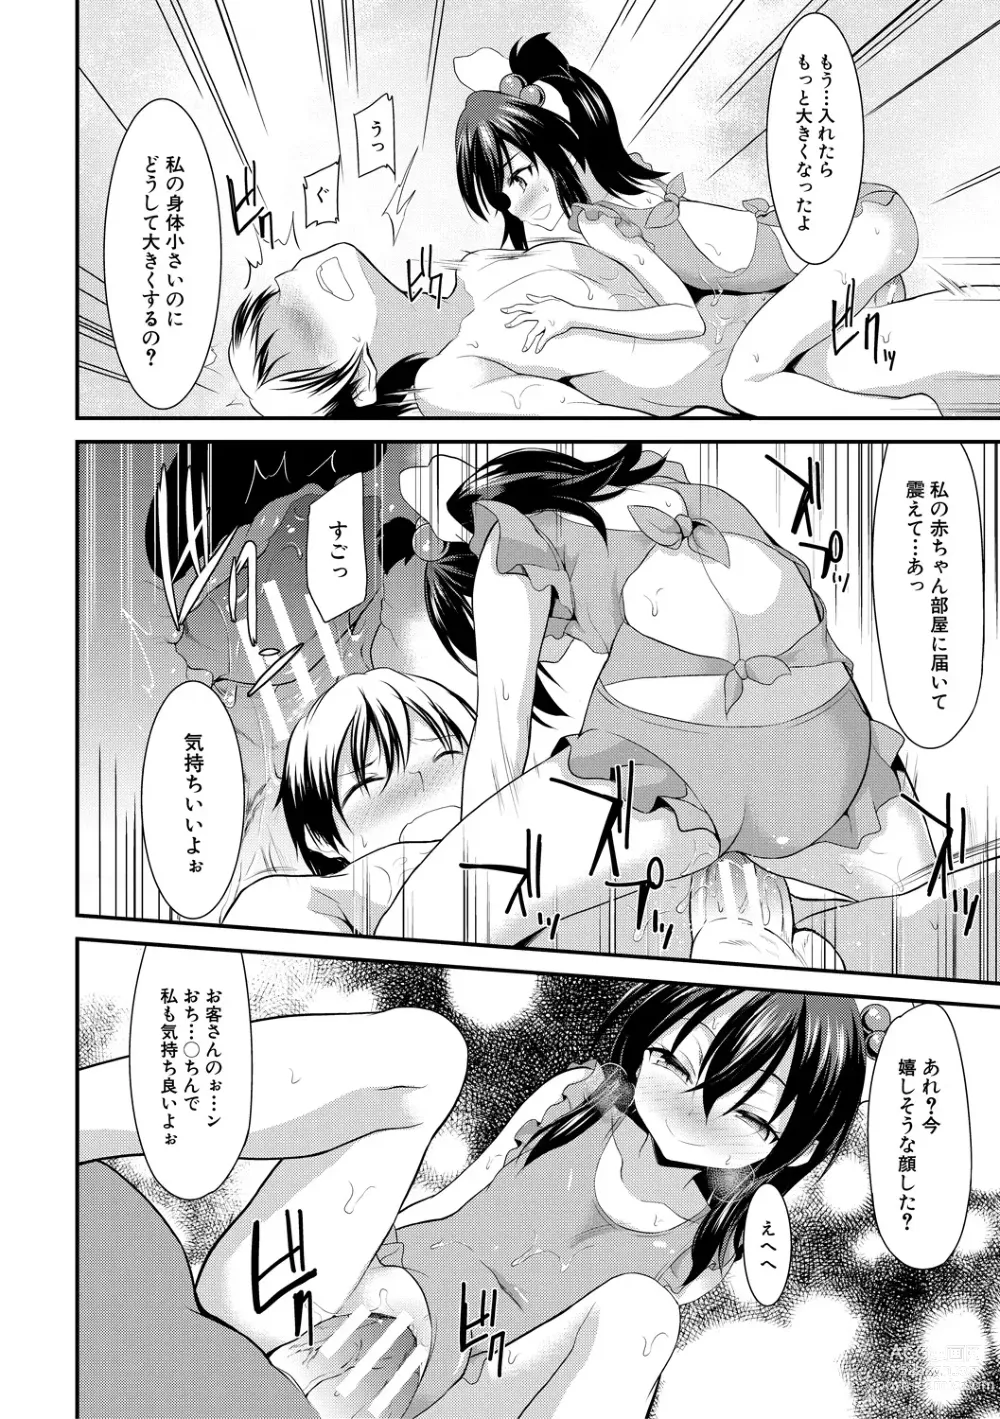 Page 20 of manga Chibikko Gakuen Soapland